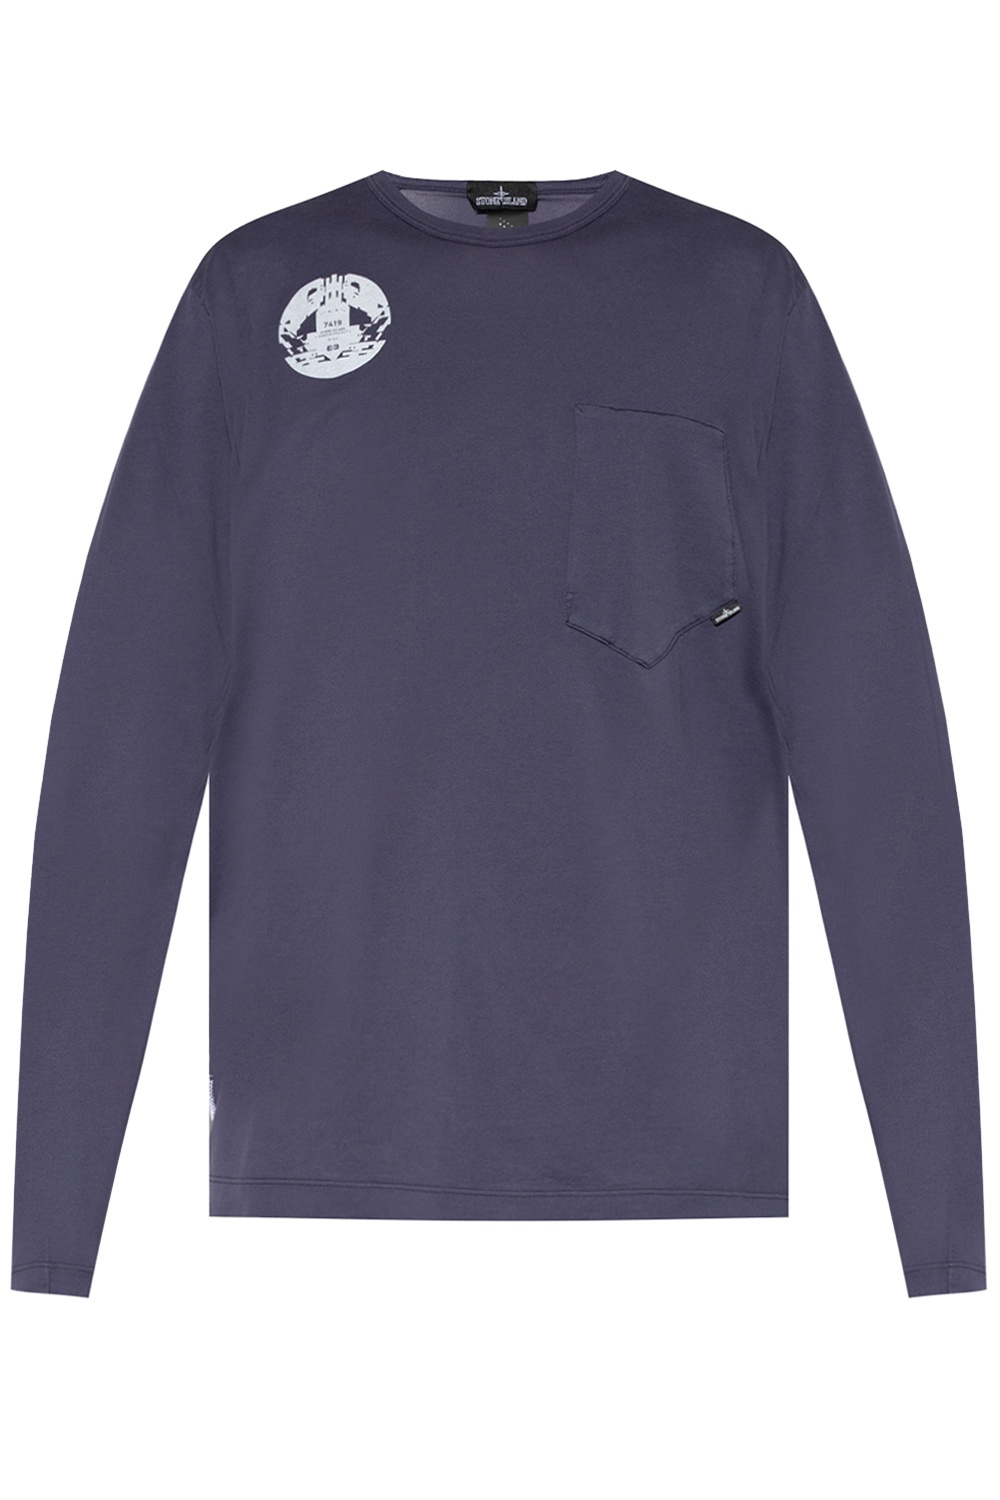 Louis Vuitton Regular Long-sleeved Shirt Raven. Size L0